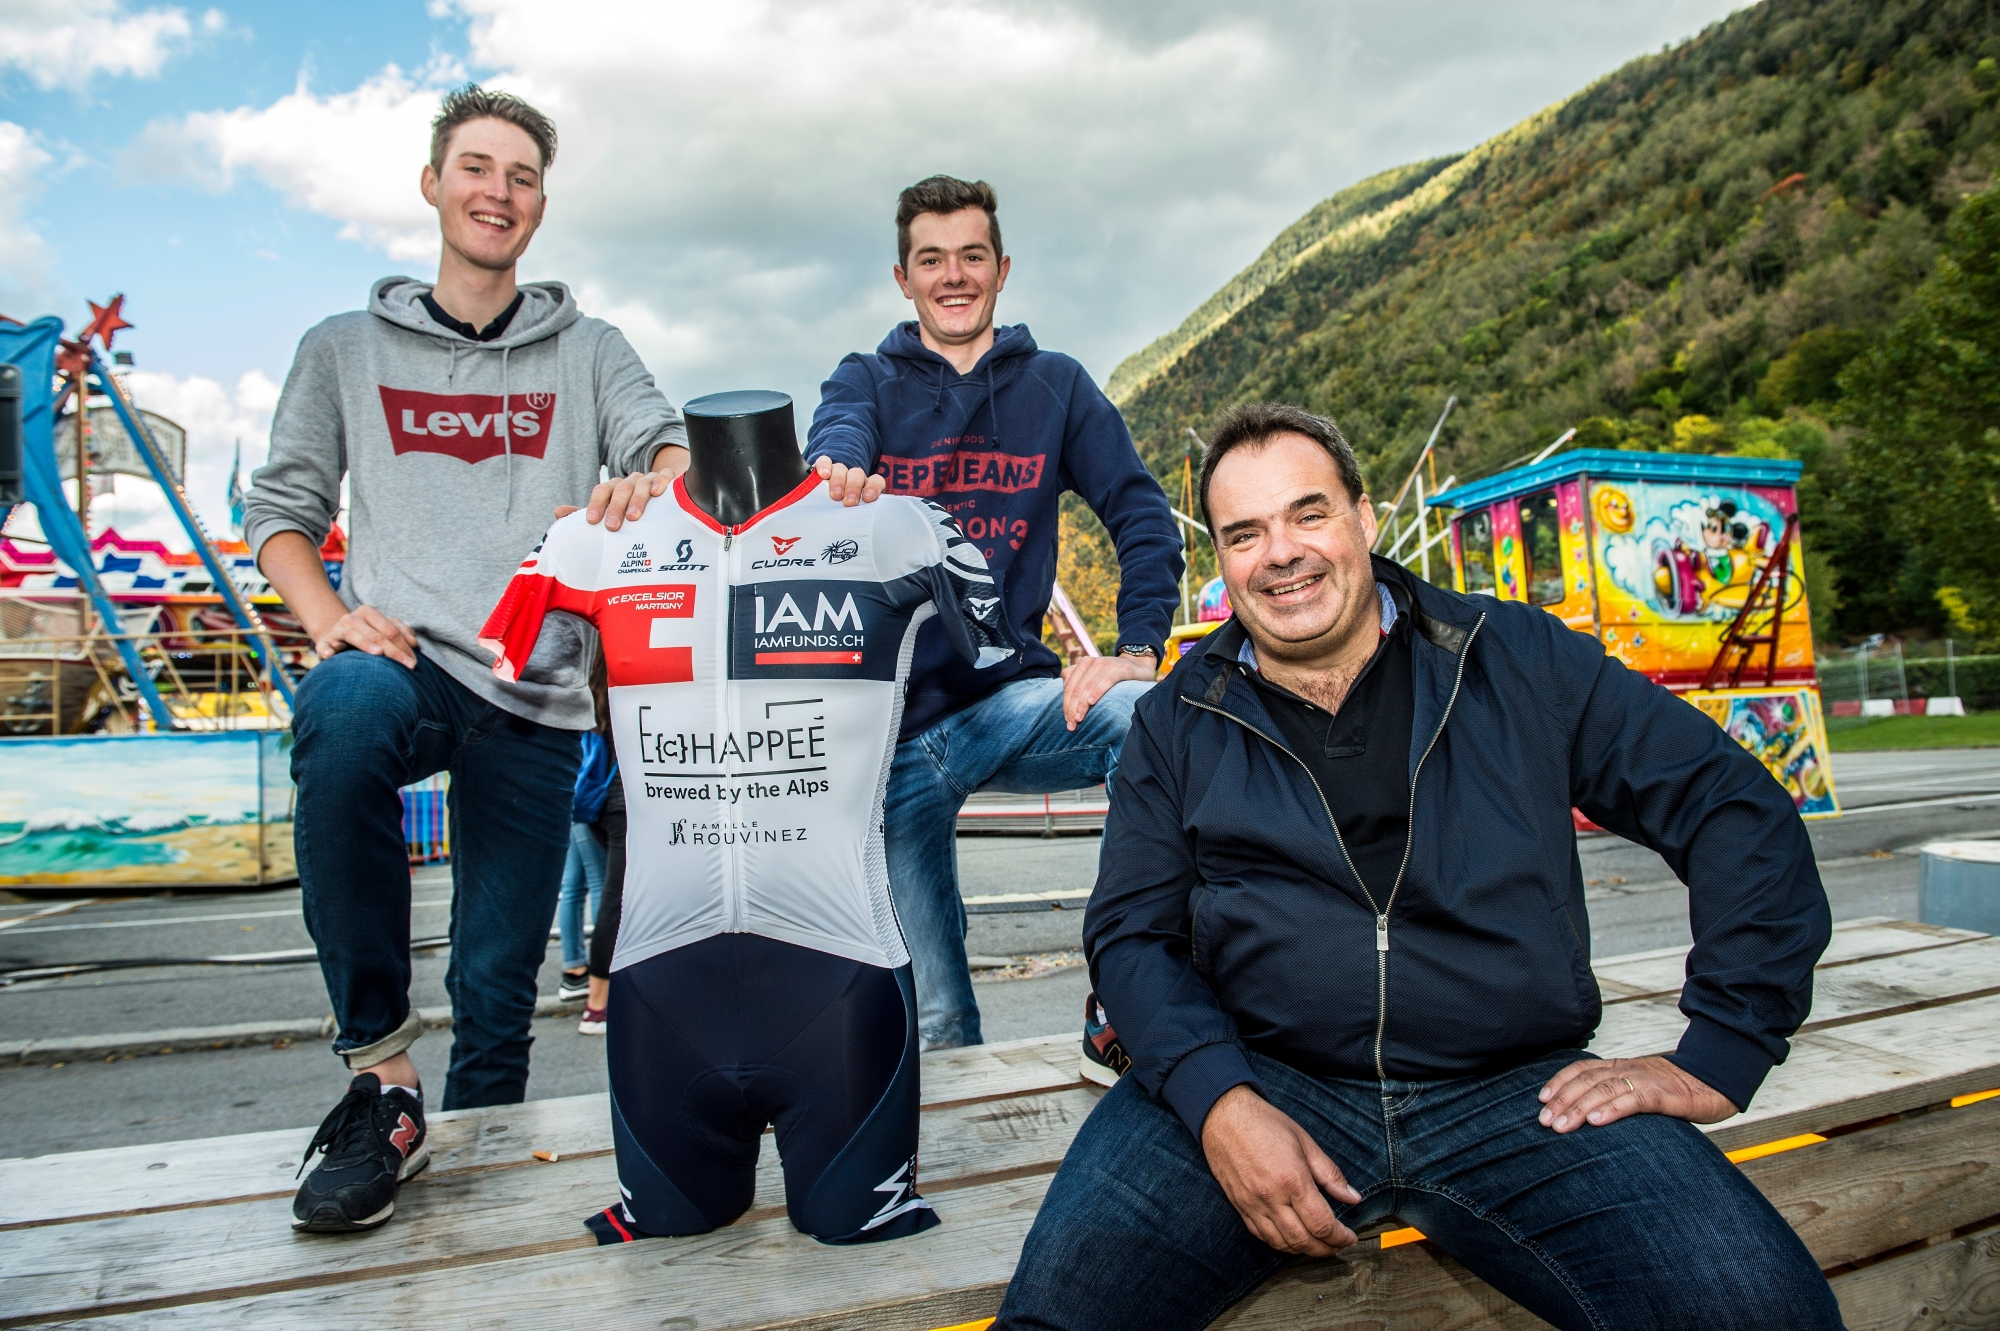 Martigny - 6 octobre 2017 - Foire du Valais, nouvelle équipe cycliste avec les coureurs Martin Schäppi et Quentin Guex et le responsable Alexandre Debons. (Le Nouvelliste/ Héloïse MARET)